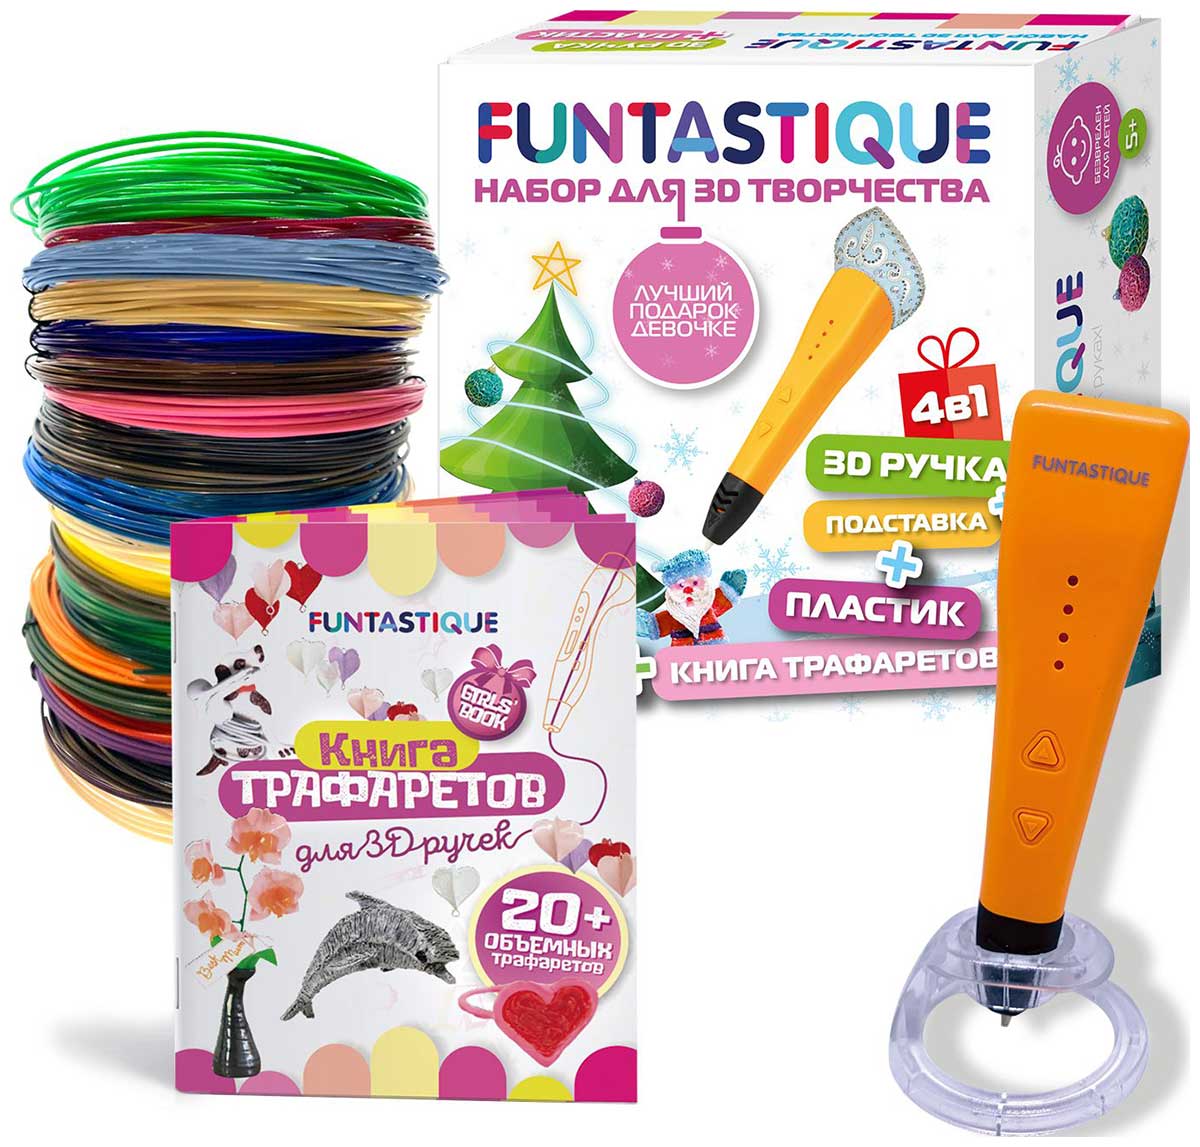 Набор для 3Д творчества Funtastique 4в1 ''Для девочек'' новогодний наборы для творчества funtastique набор 3d ручка xeon и pla пластик 7 цветов